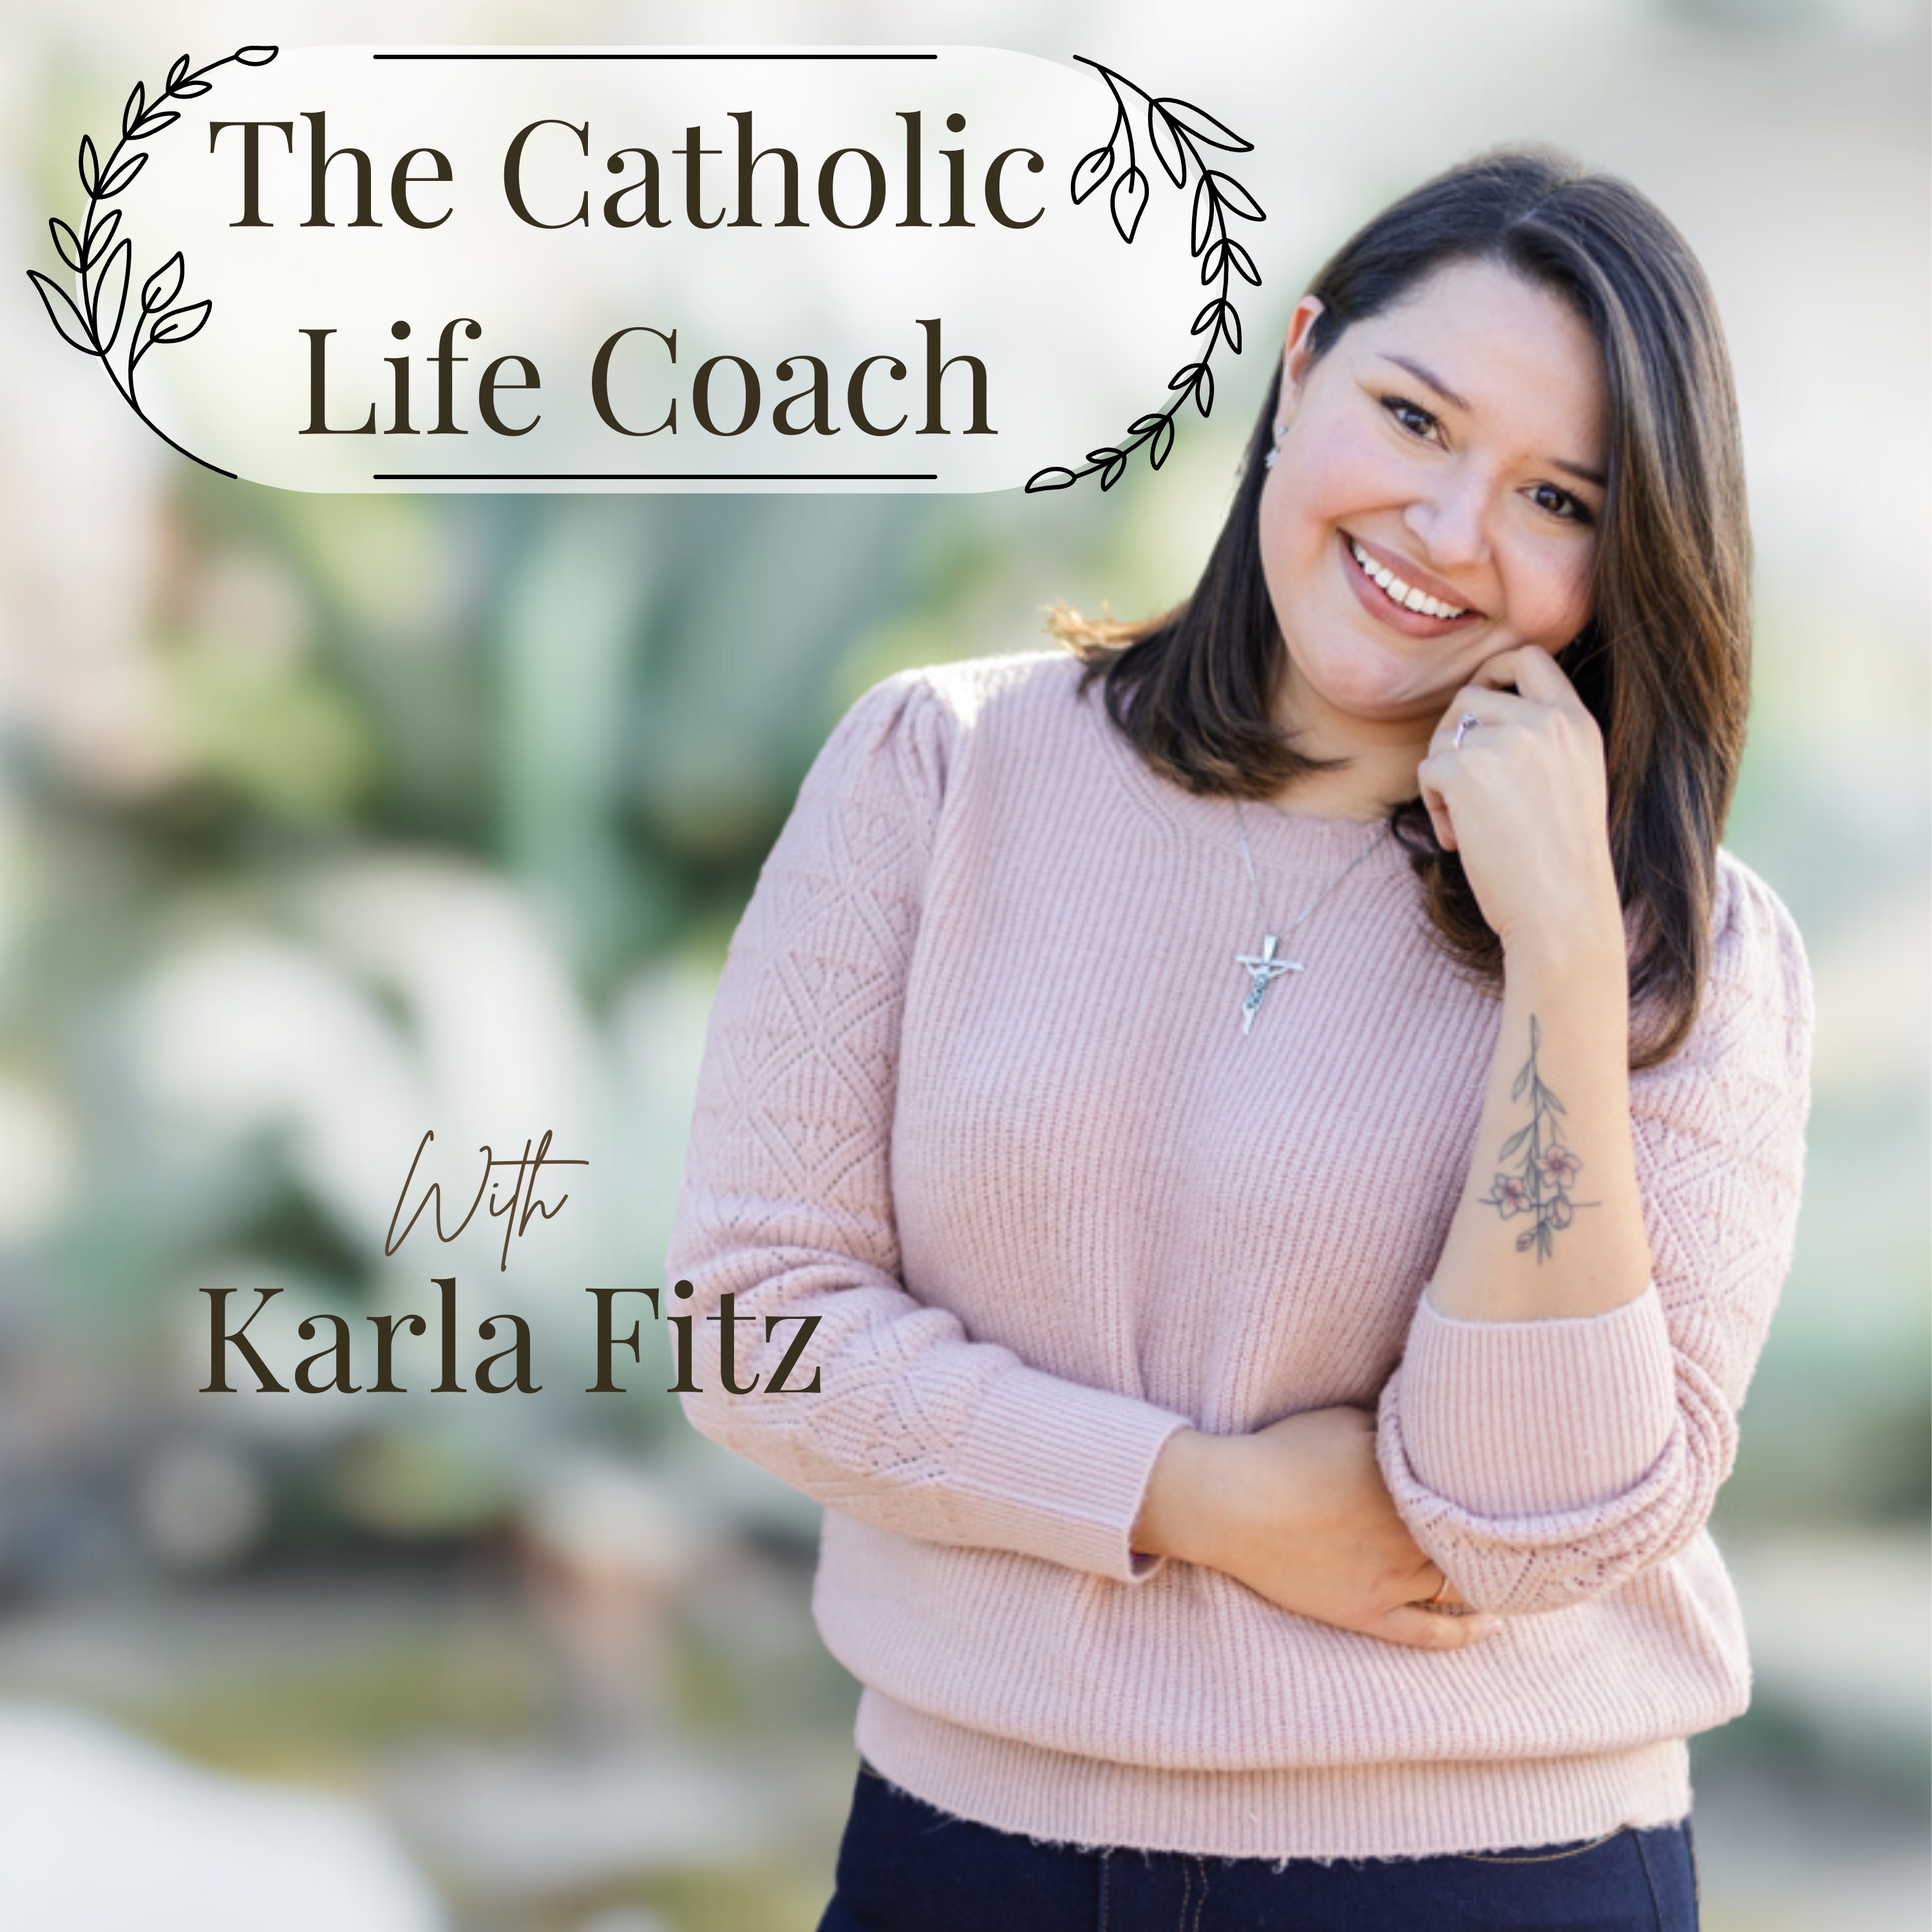 The Catholic Life Coach